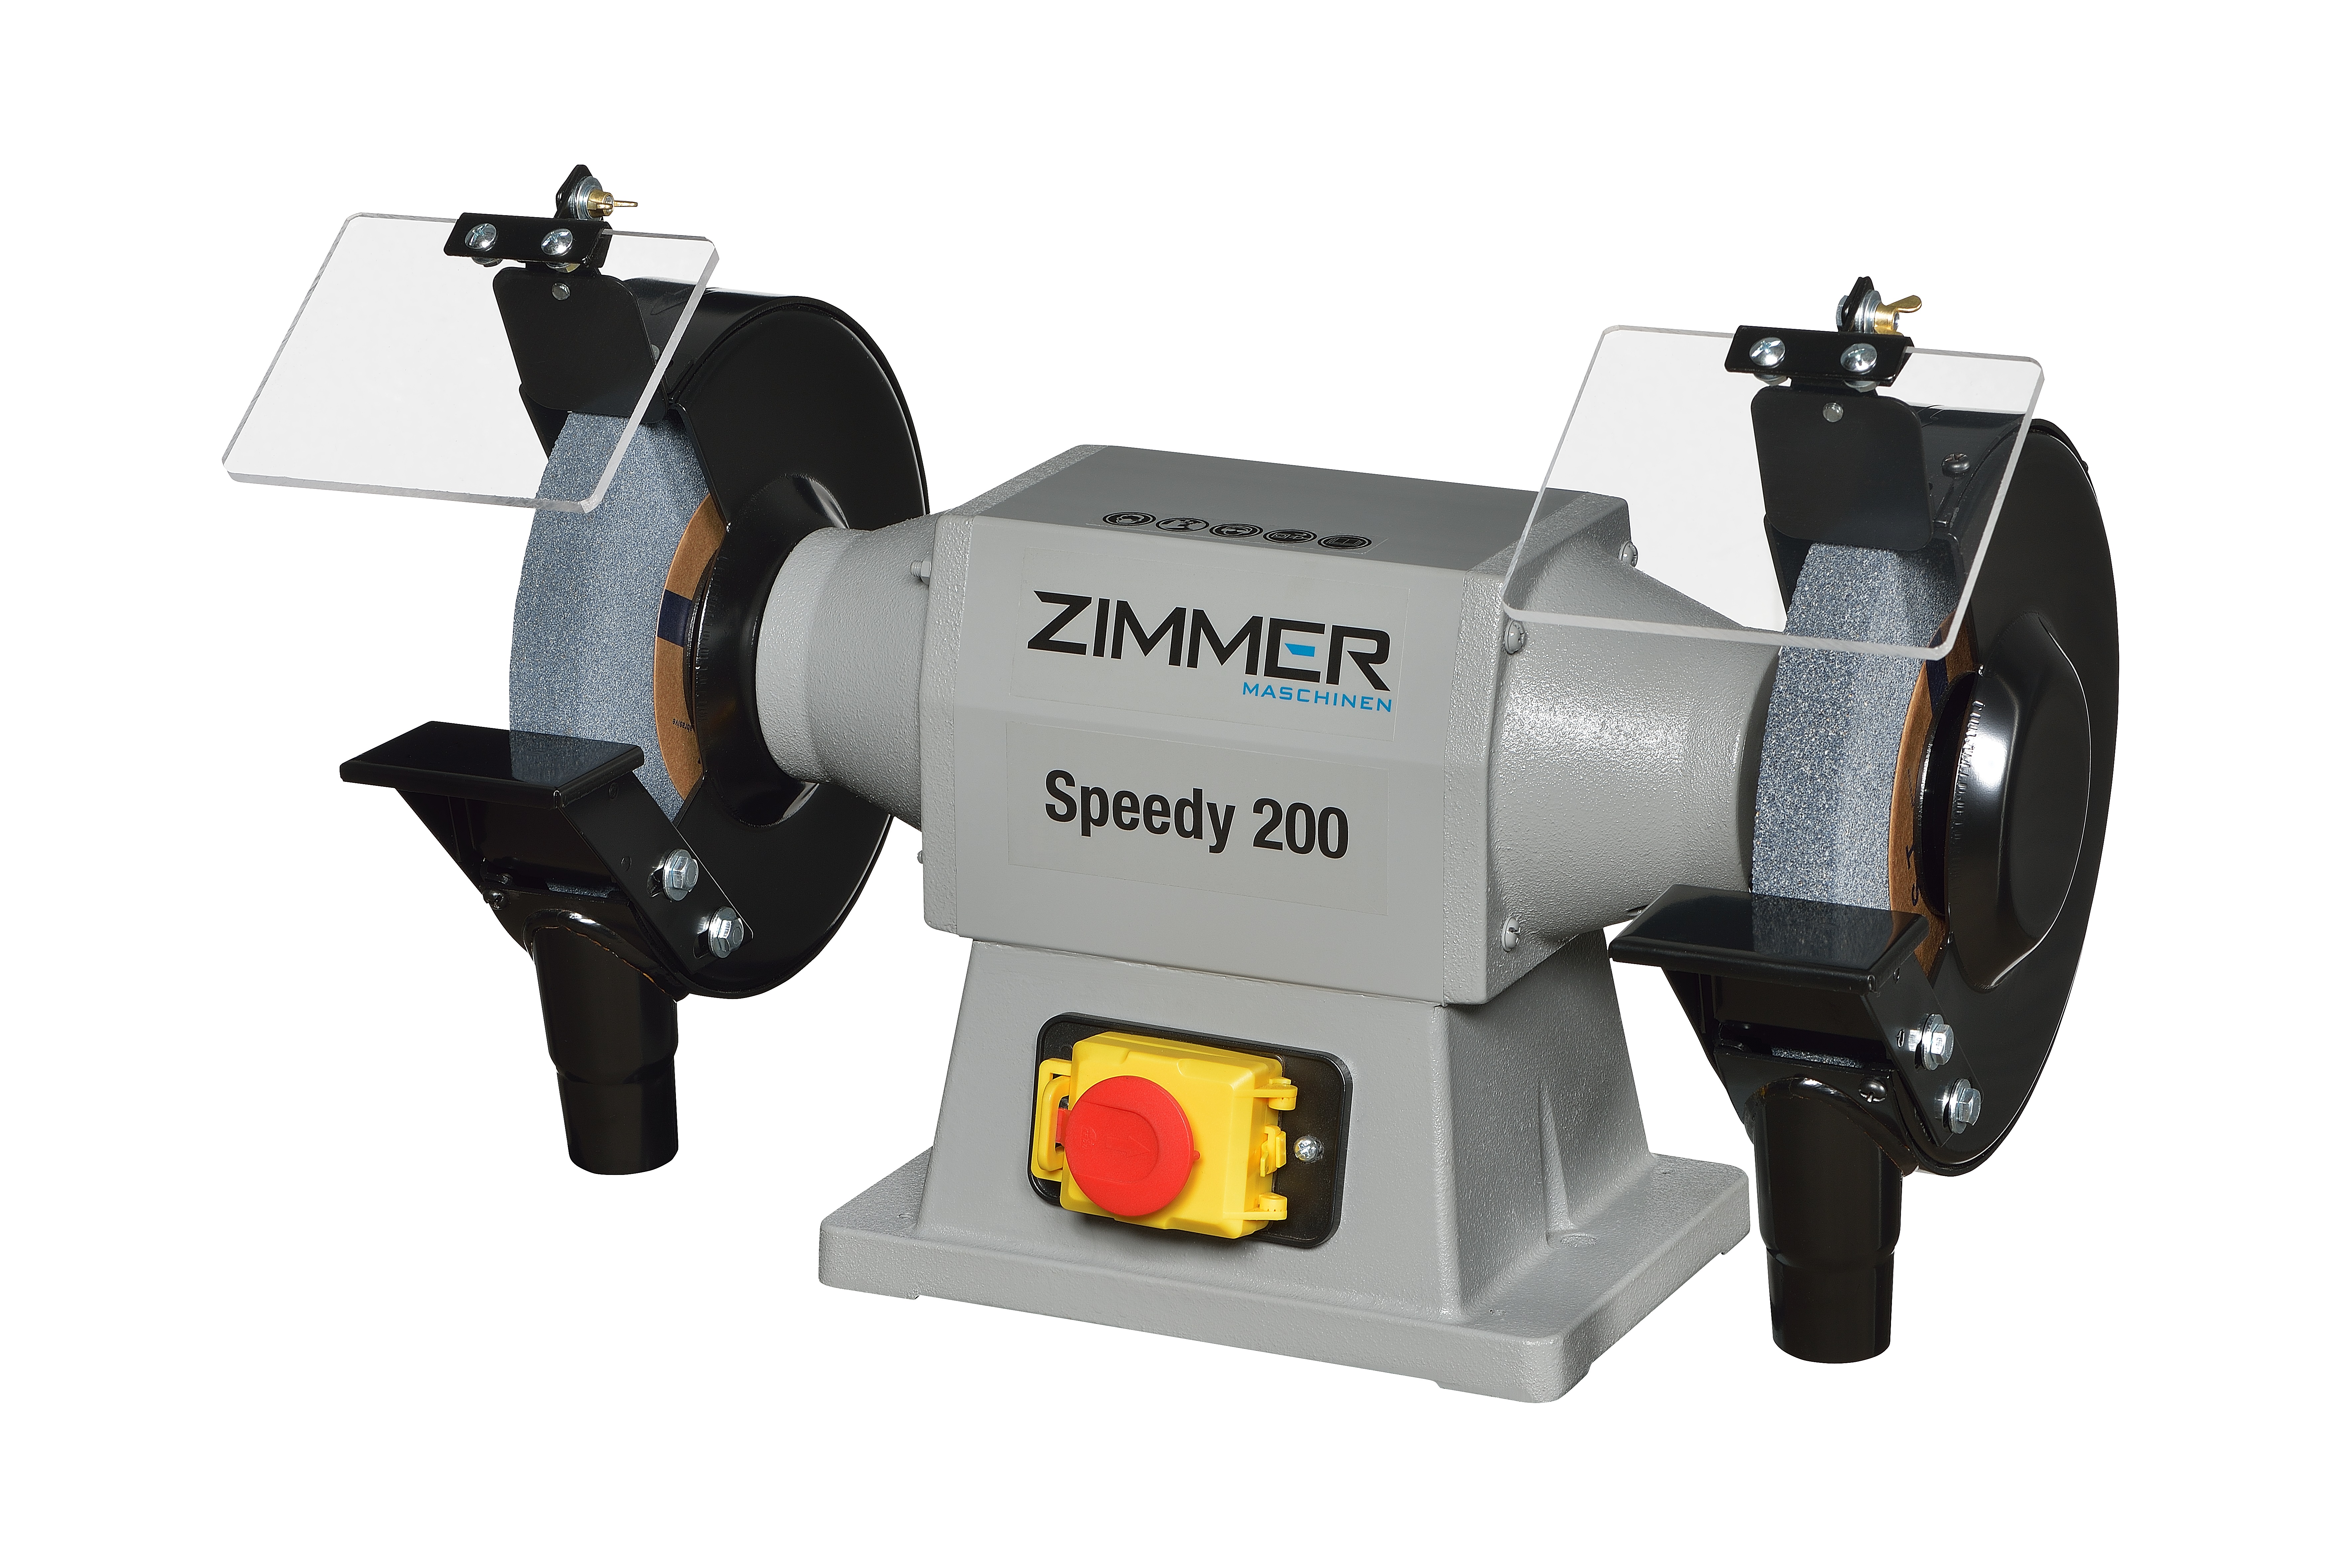 ZIMMER Doppelschleifmaschine Modell SPEEDY 200 (1x Korund A36 / 1x Korund A60 serienmäßig -200x25x20mm) 2.850 1/min. - 0,75kW - 400V